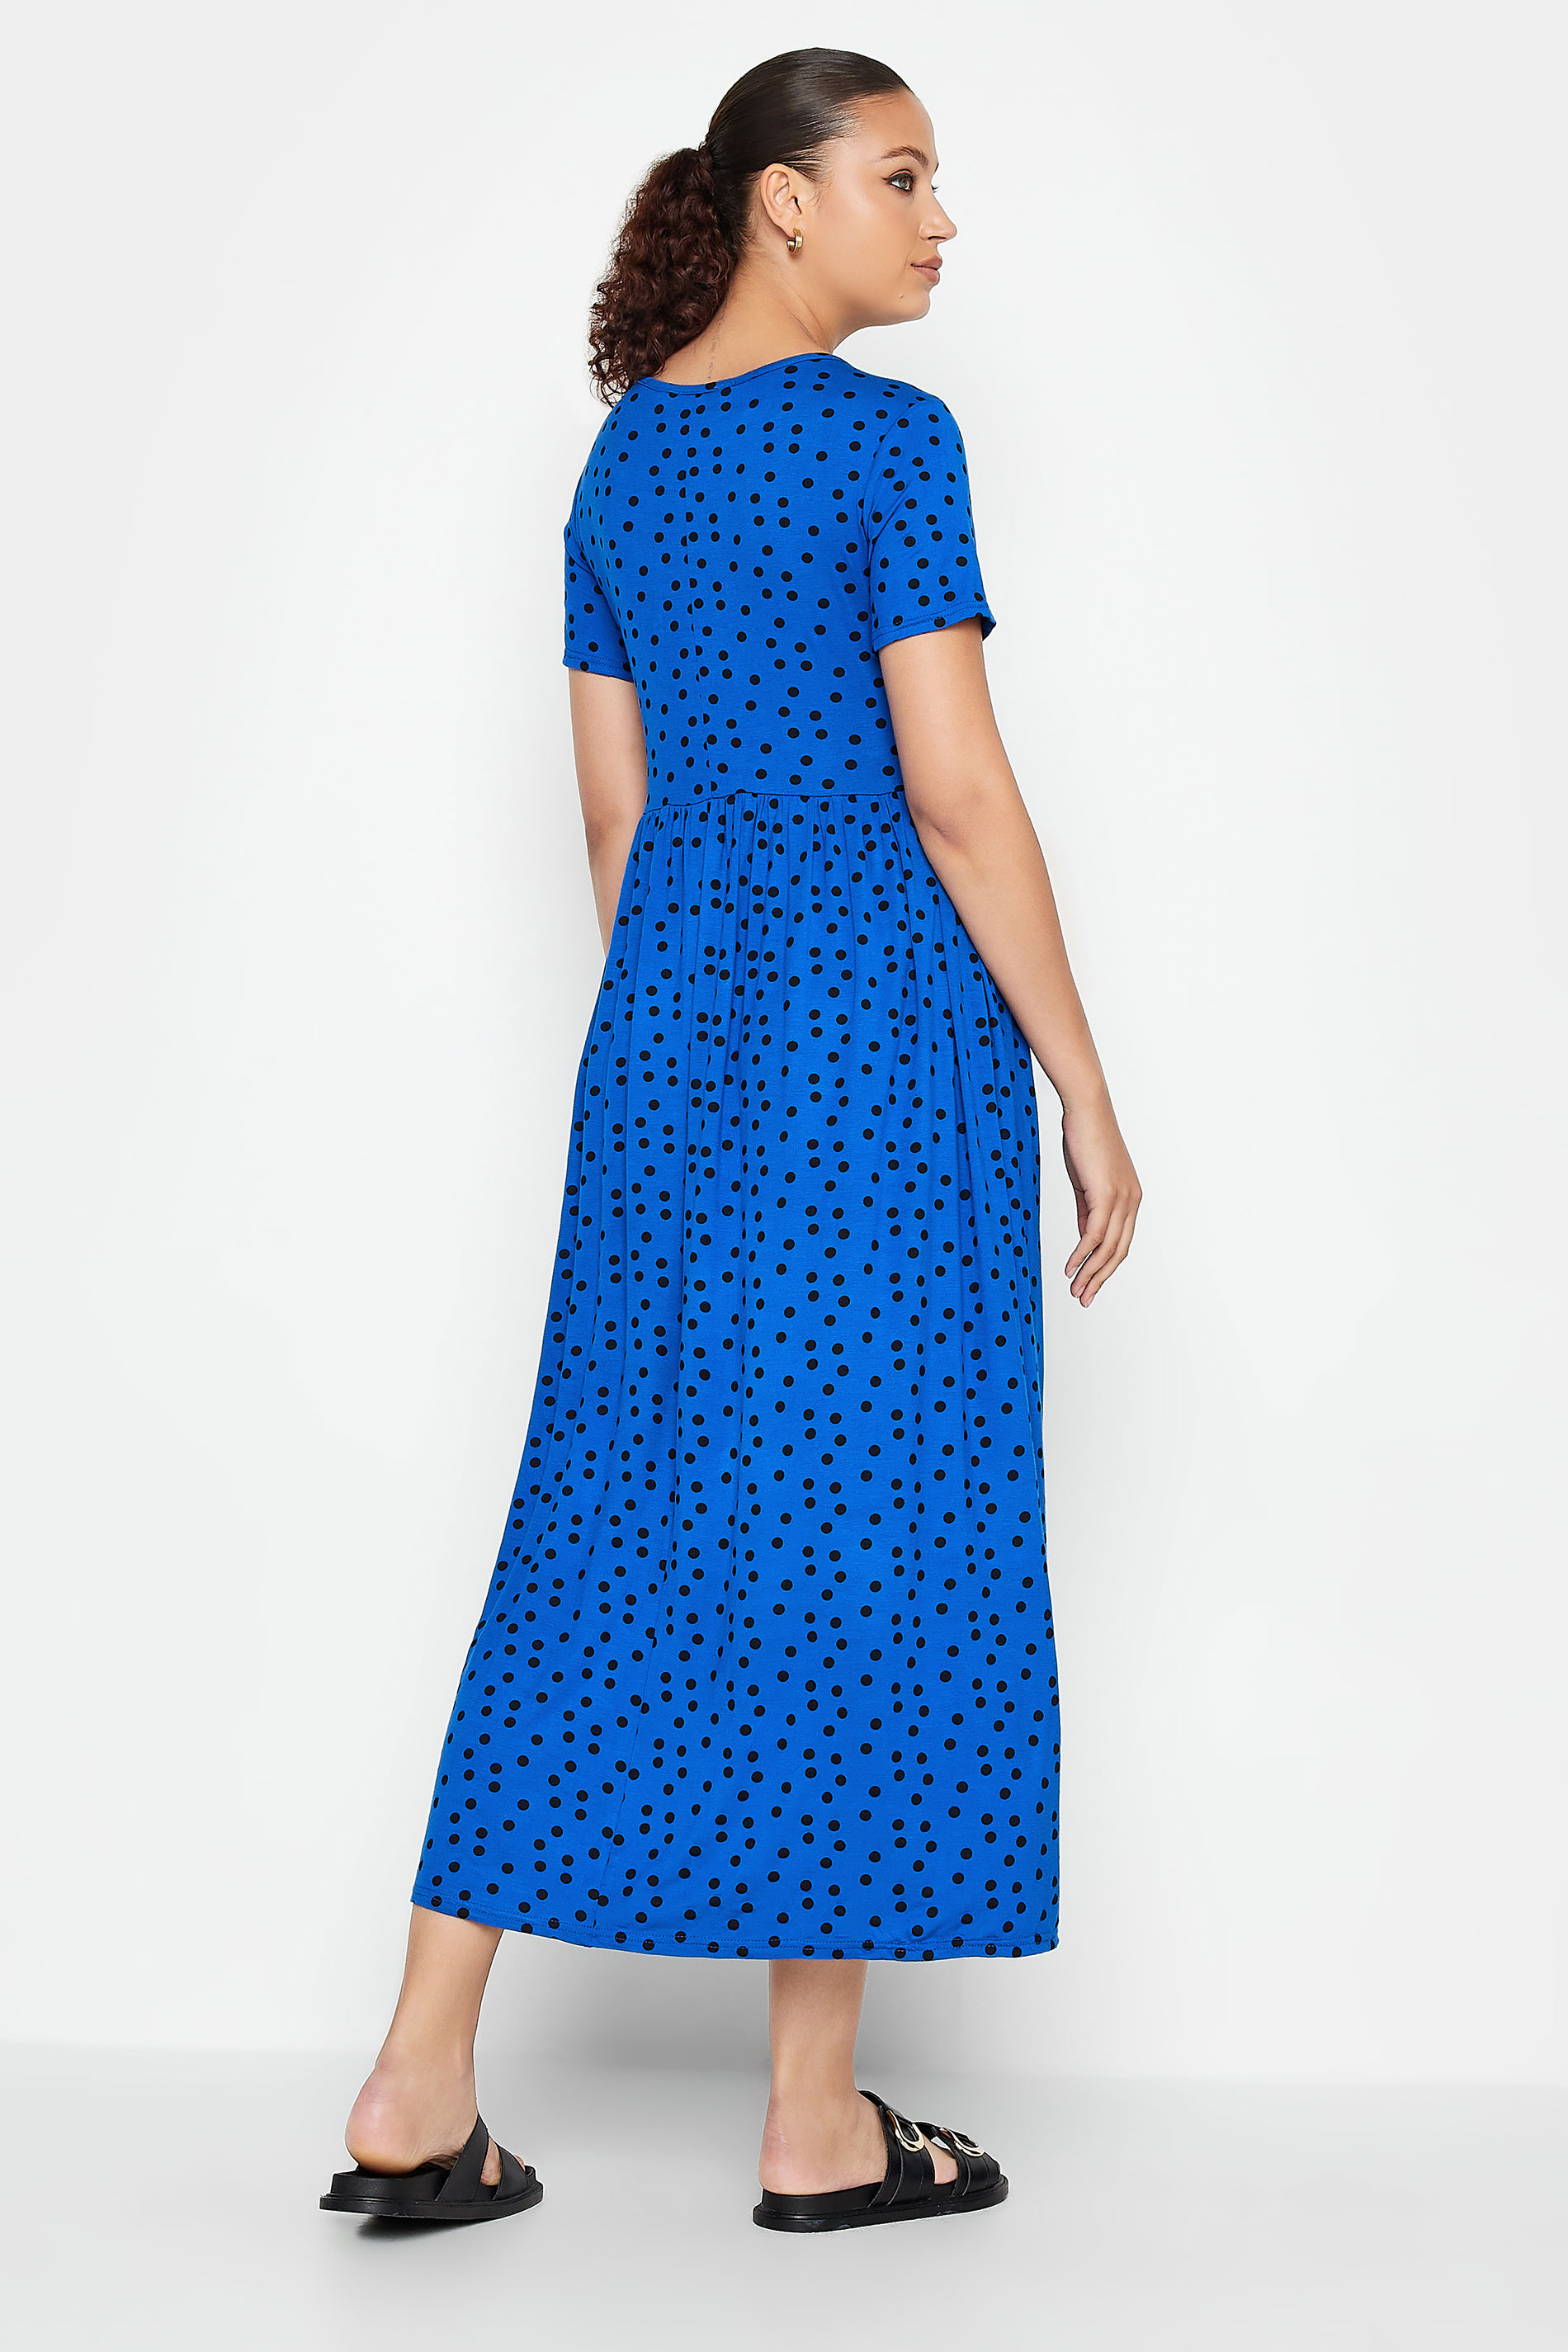 LTS Tall Cobalt Blue Polka Dot Maxi Dress | Long Tall Sally  3